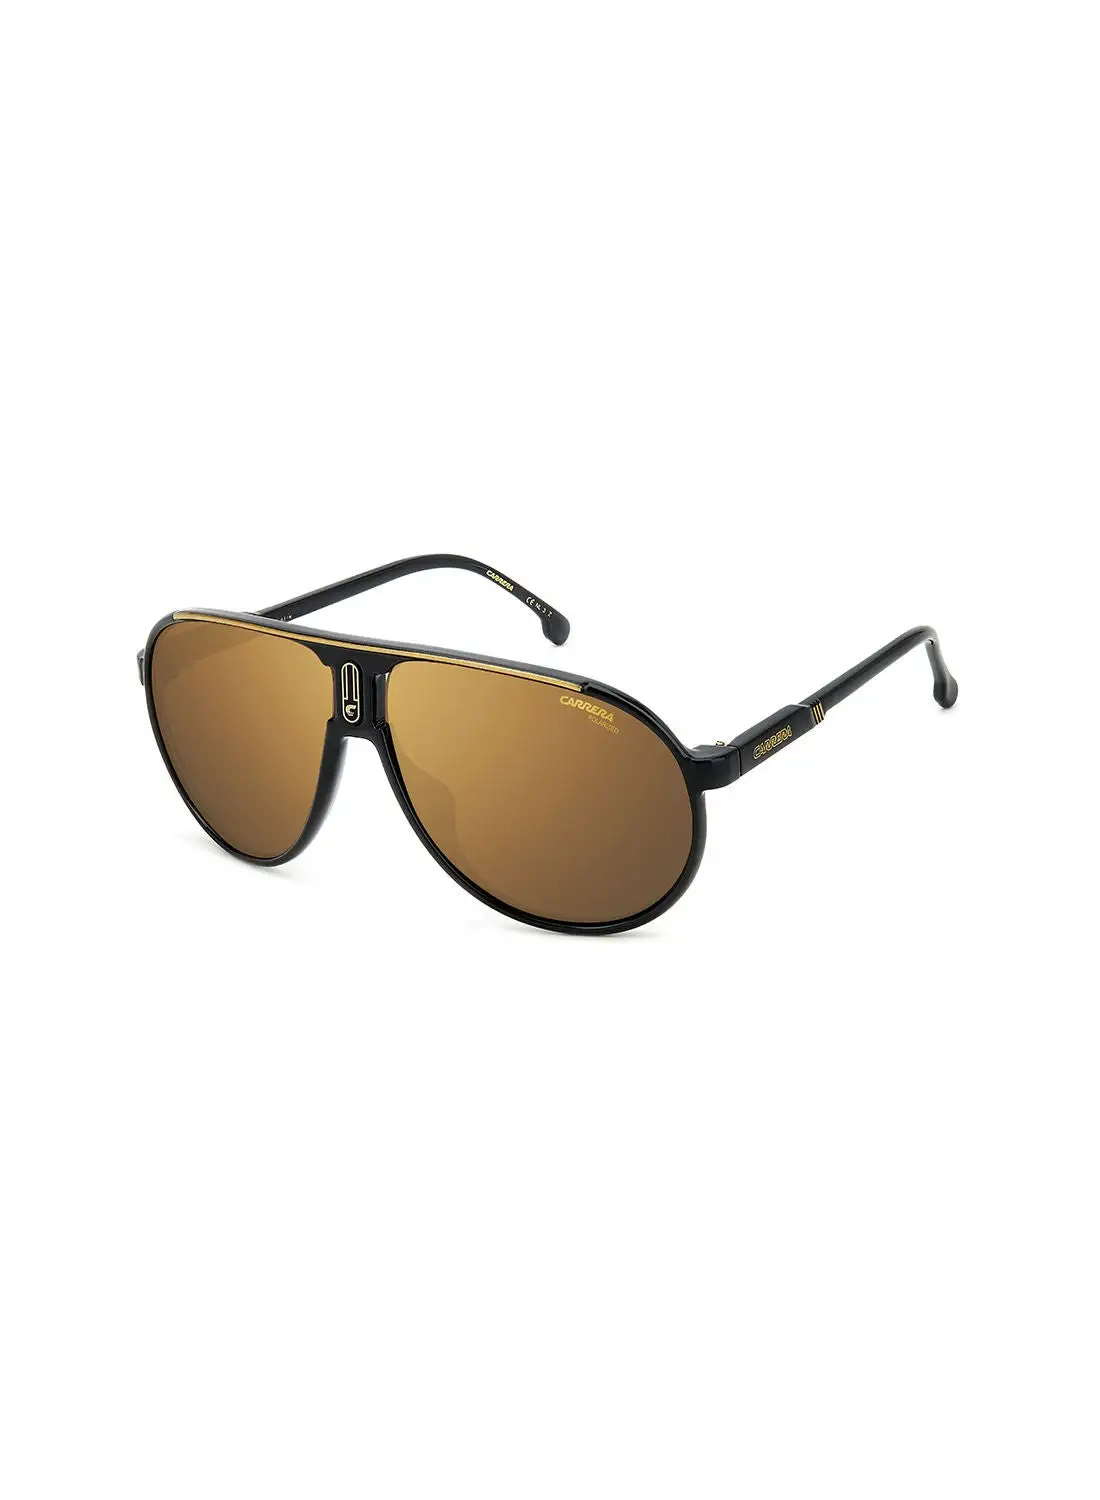 نظارة شمسية بايلوت للحماية من الأشعة فوق البنفسجية للجنسين من كاريرا - Champion65/N Blk Gold 62 - مقاس العدسة: 62 ملم